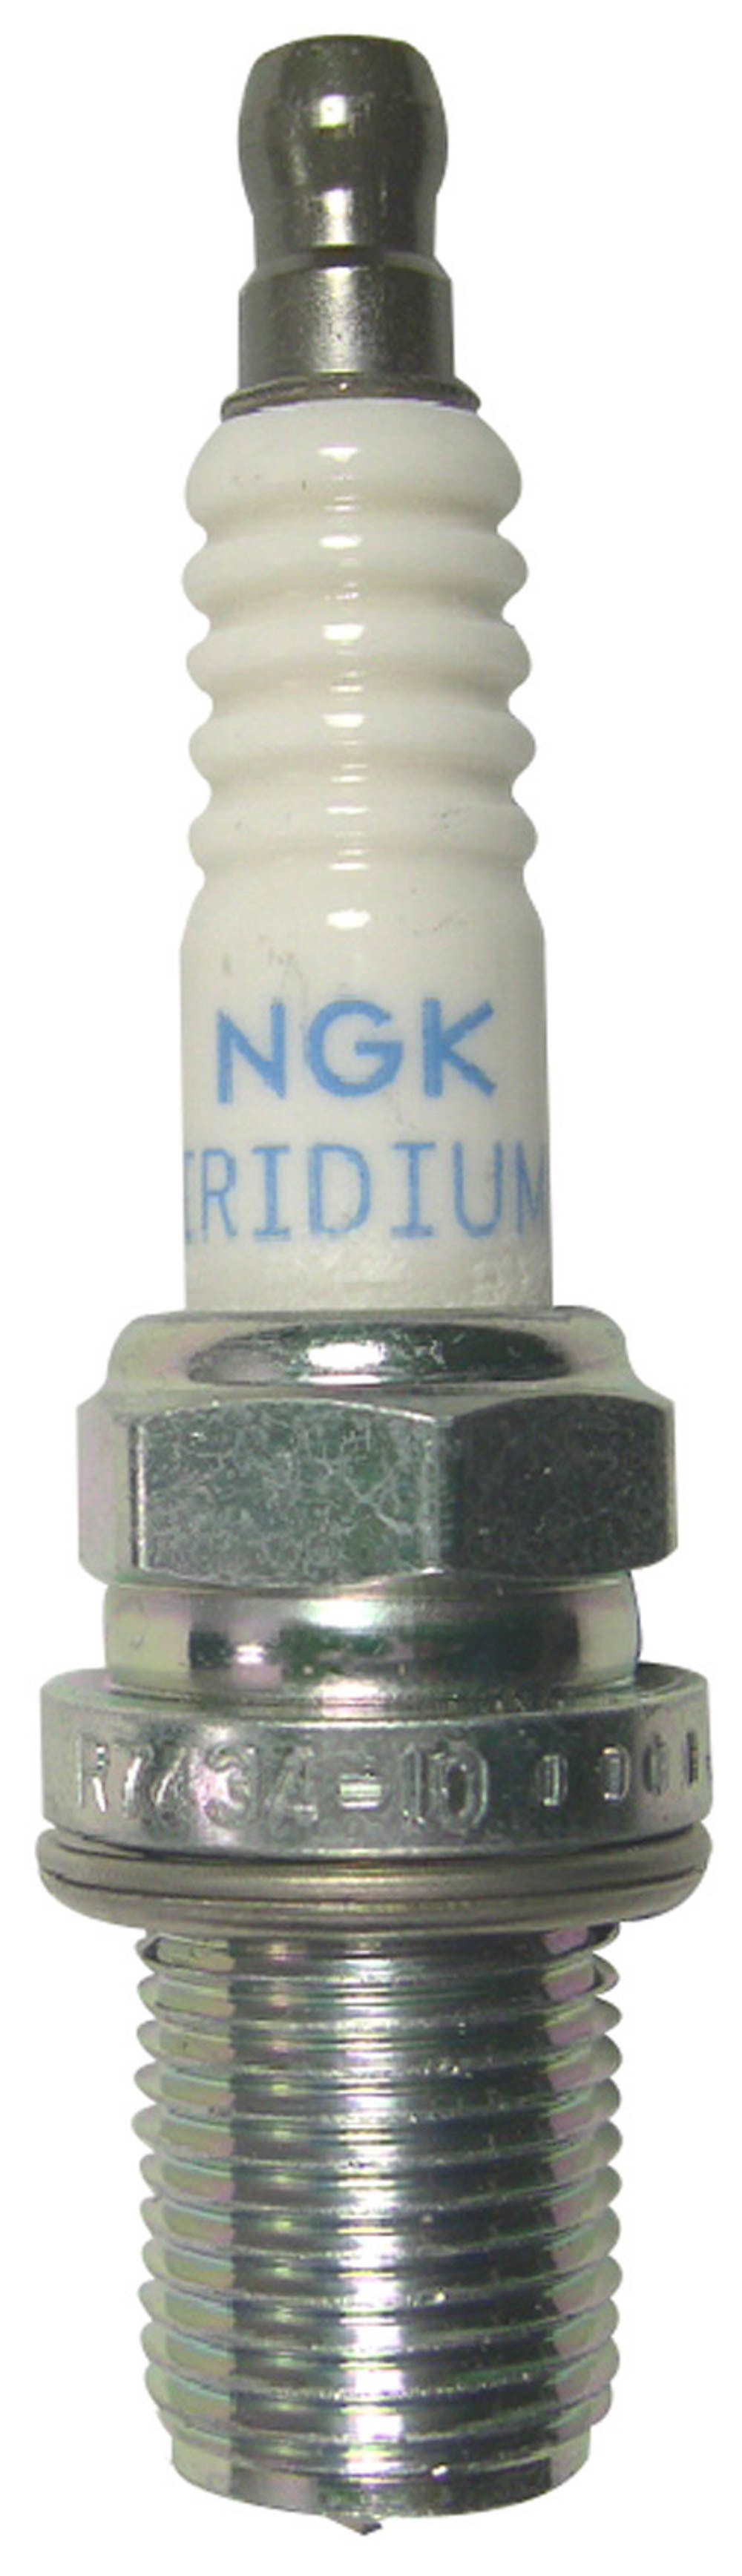 NGK Spark Plug Stock #4894